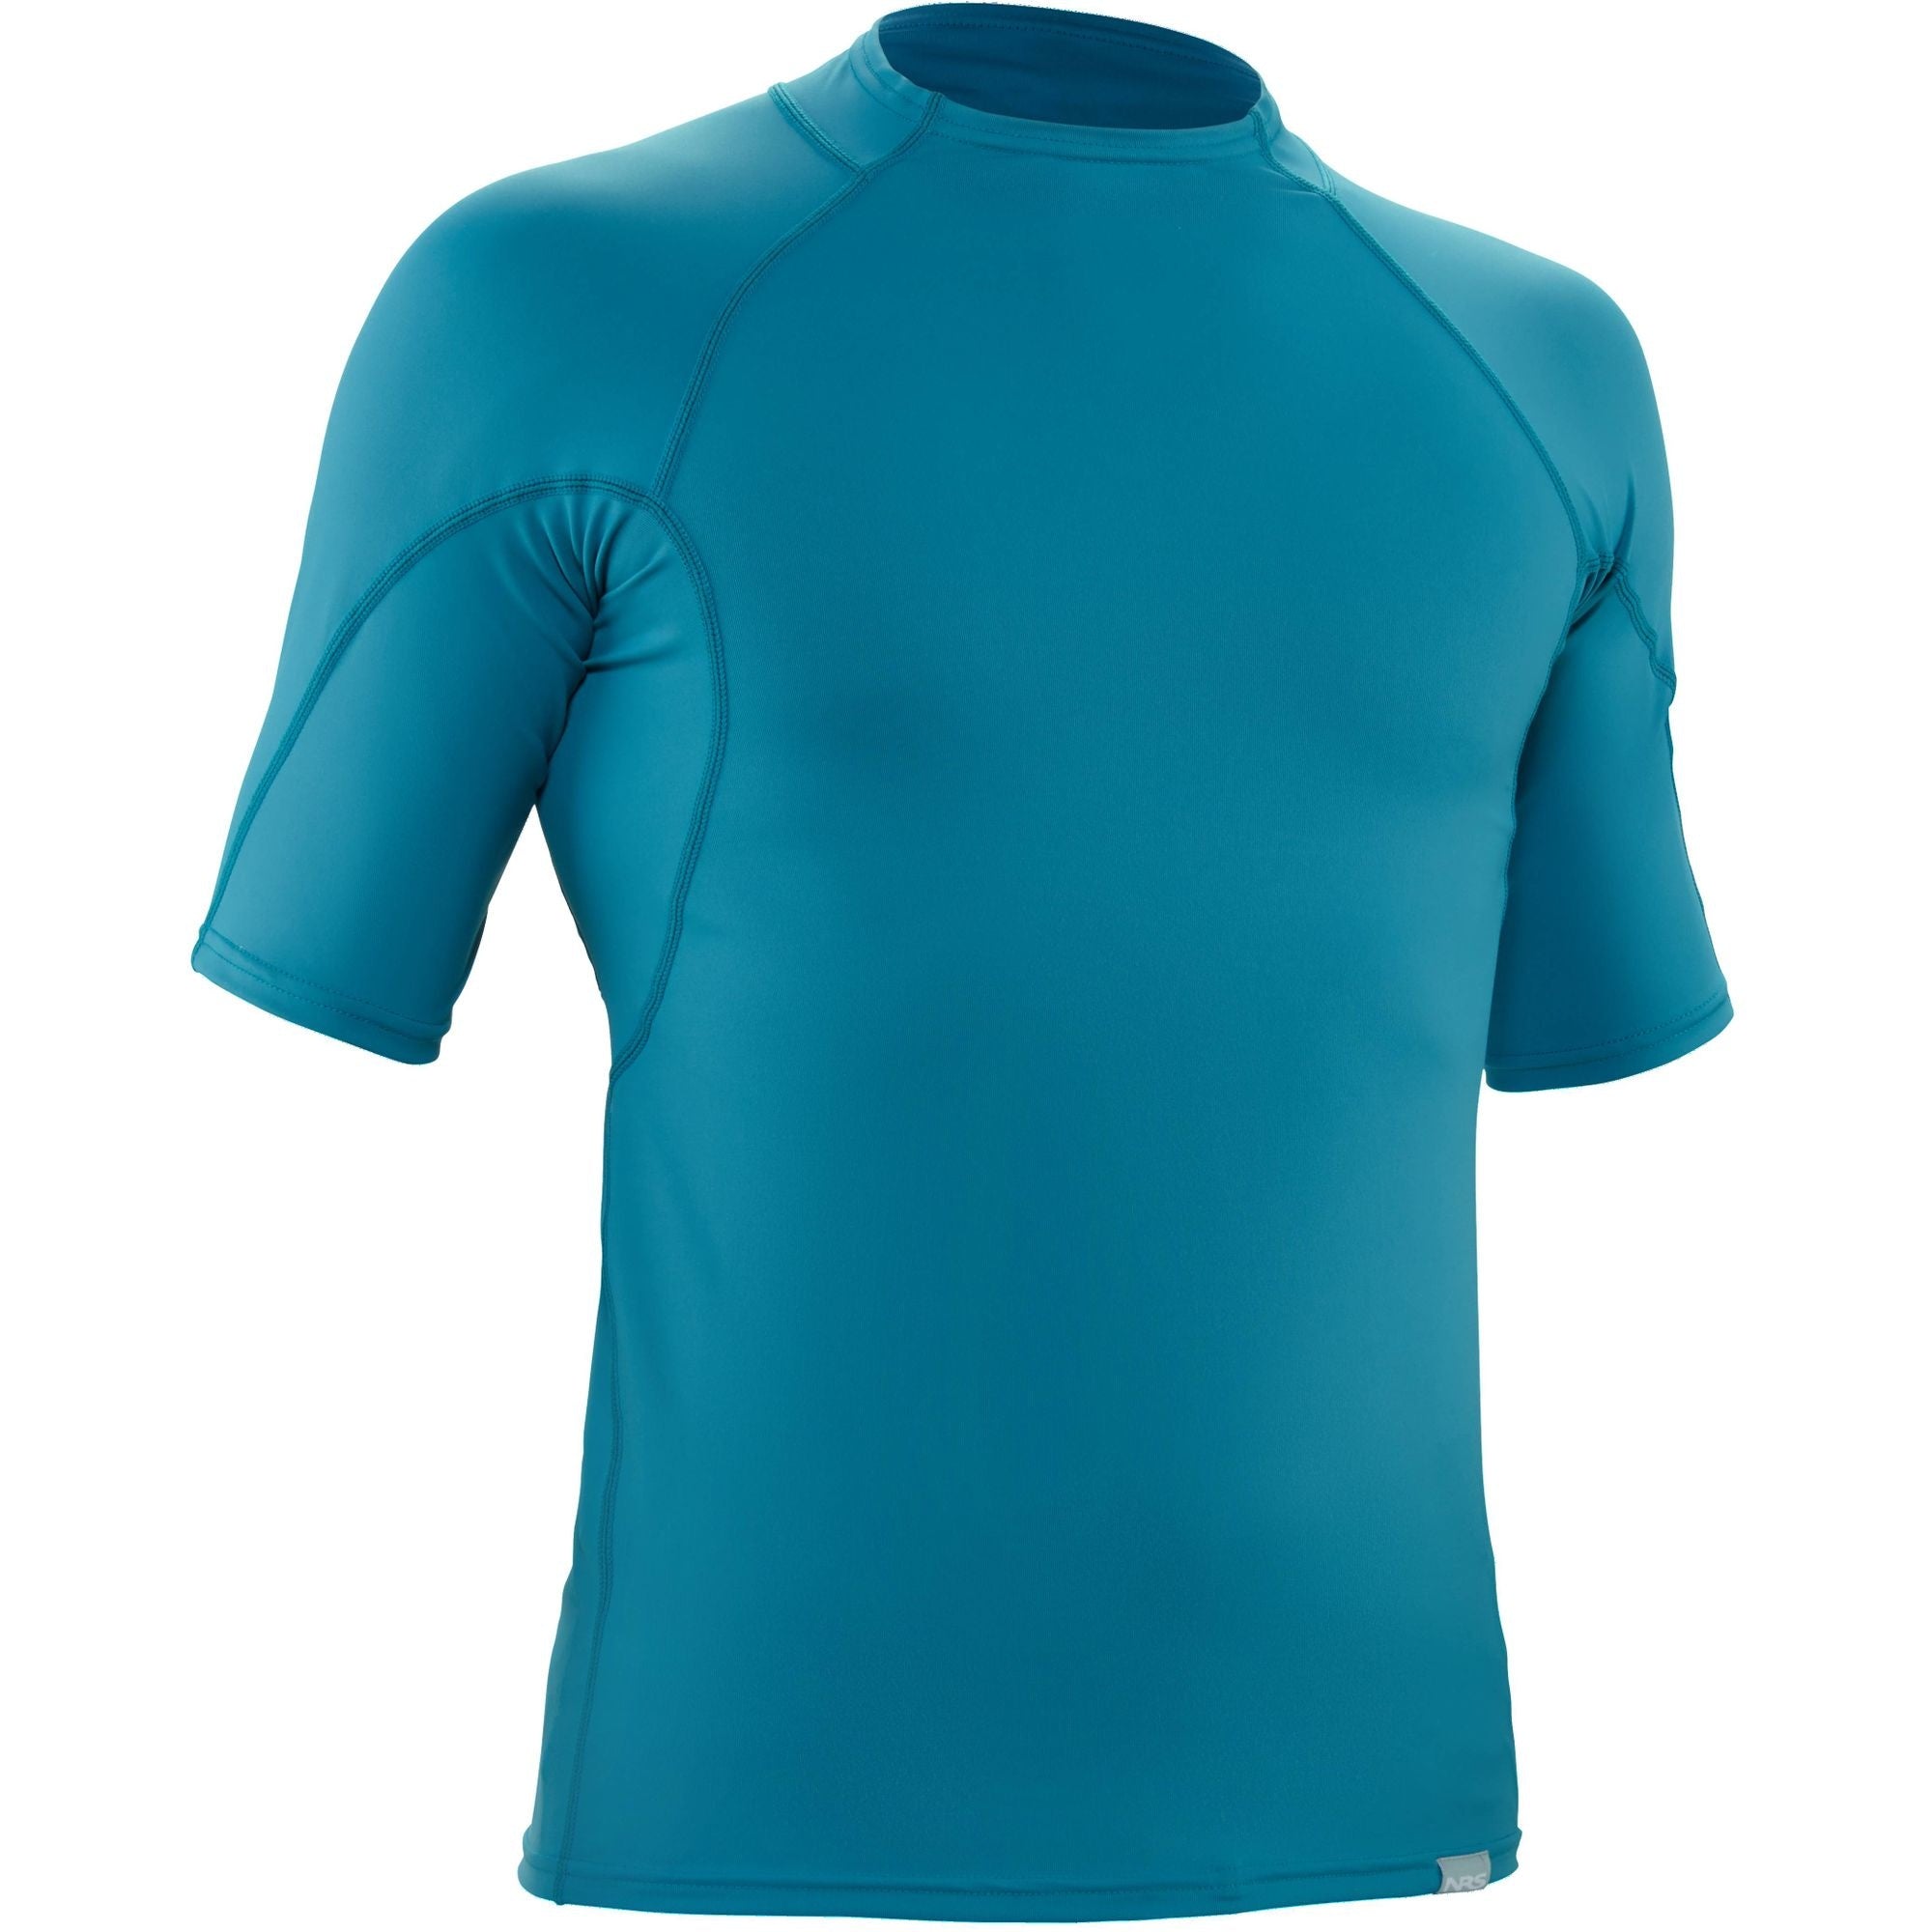 NRS - Men's H2Core Rashguard Short-Sleeve Shirt